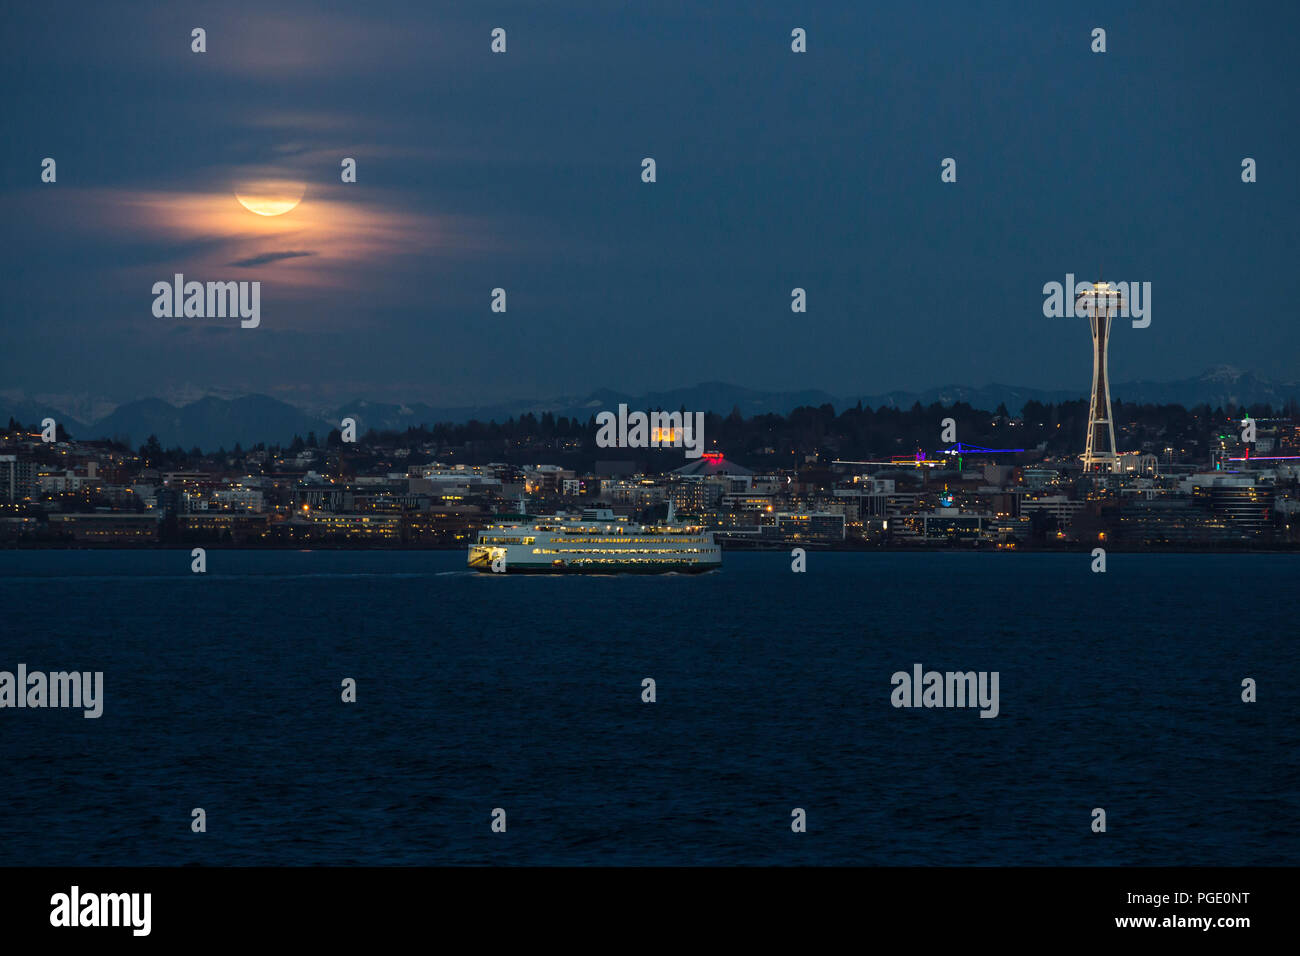 Seattle Space Needle, Seattle skyline, Seattle Waterfront con Seattle ferry y subida de luna llena. Foto de stock